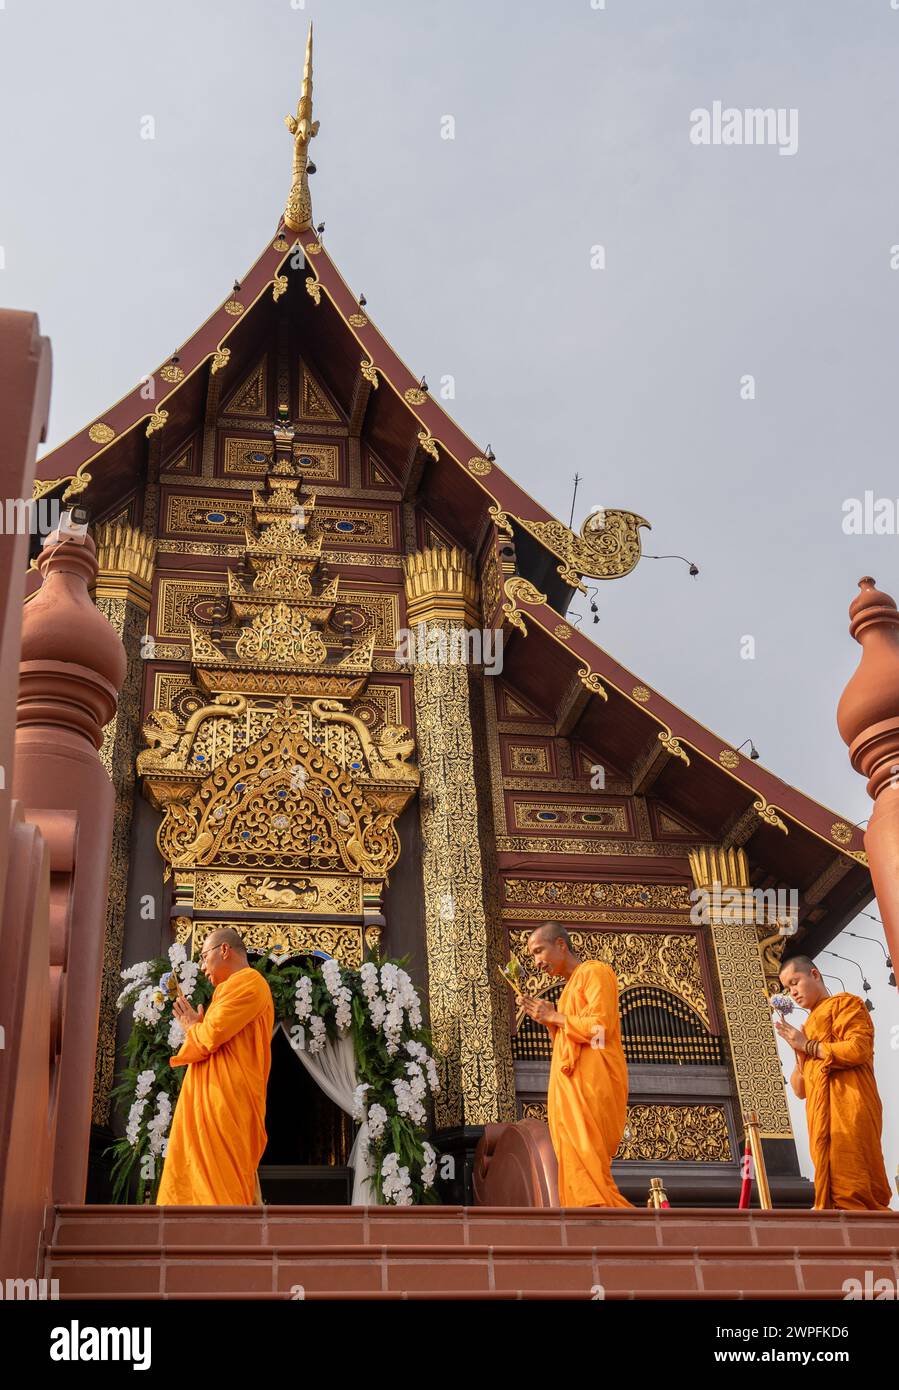 Gläubige, die an den buddhistischen Feierlichkeiten von Makha Bucha teilnehmen, bei denen Reliquien Buddhas im Royal Park Rajapruek in Chiang Mai, Thailand, aufbewahrt werden Stockfoto